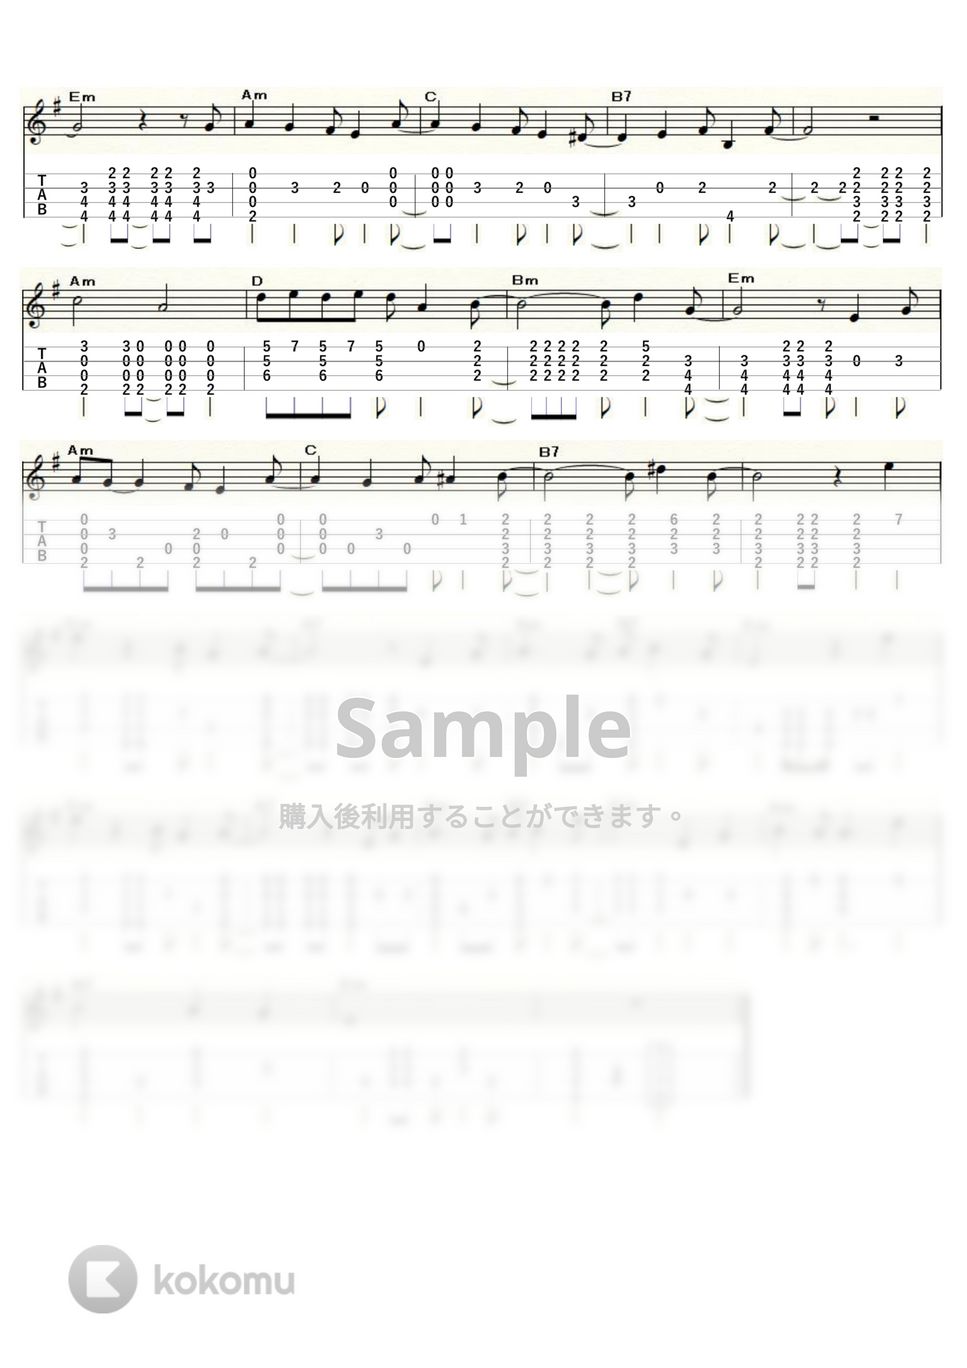 中村雅俊 - 恋人も濡れる街角 (ｳｸﾚﾚｿﾛ / Low-G / 上級) by ukulelepapa